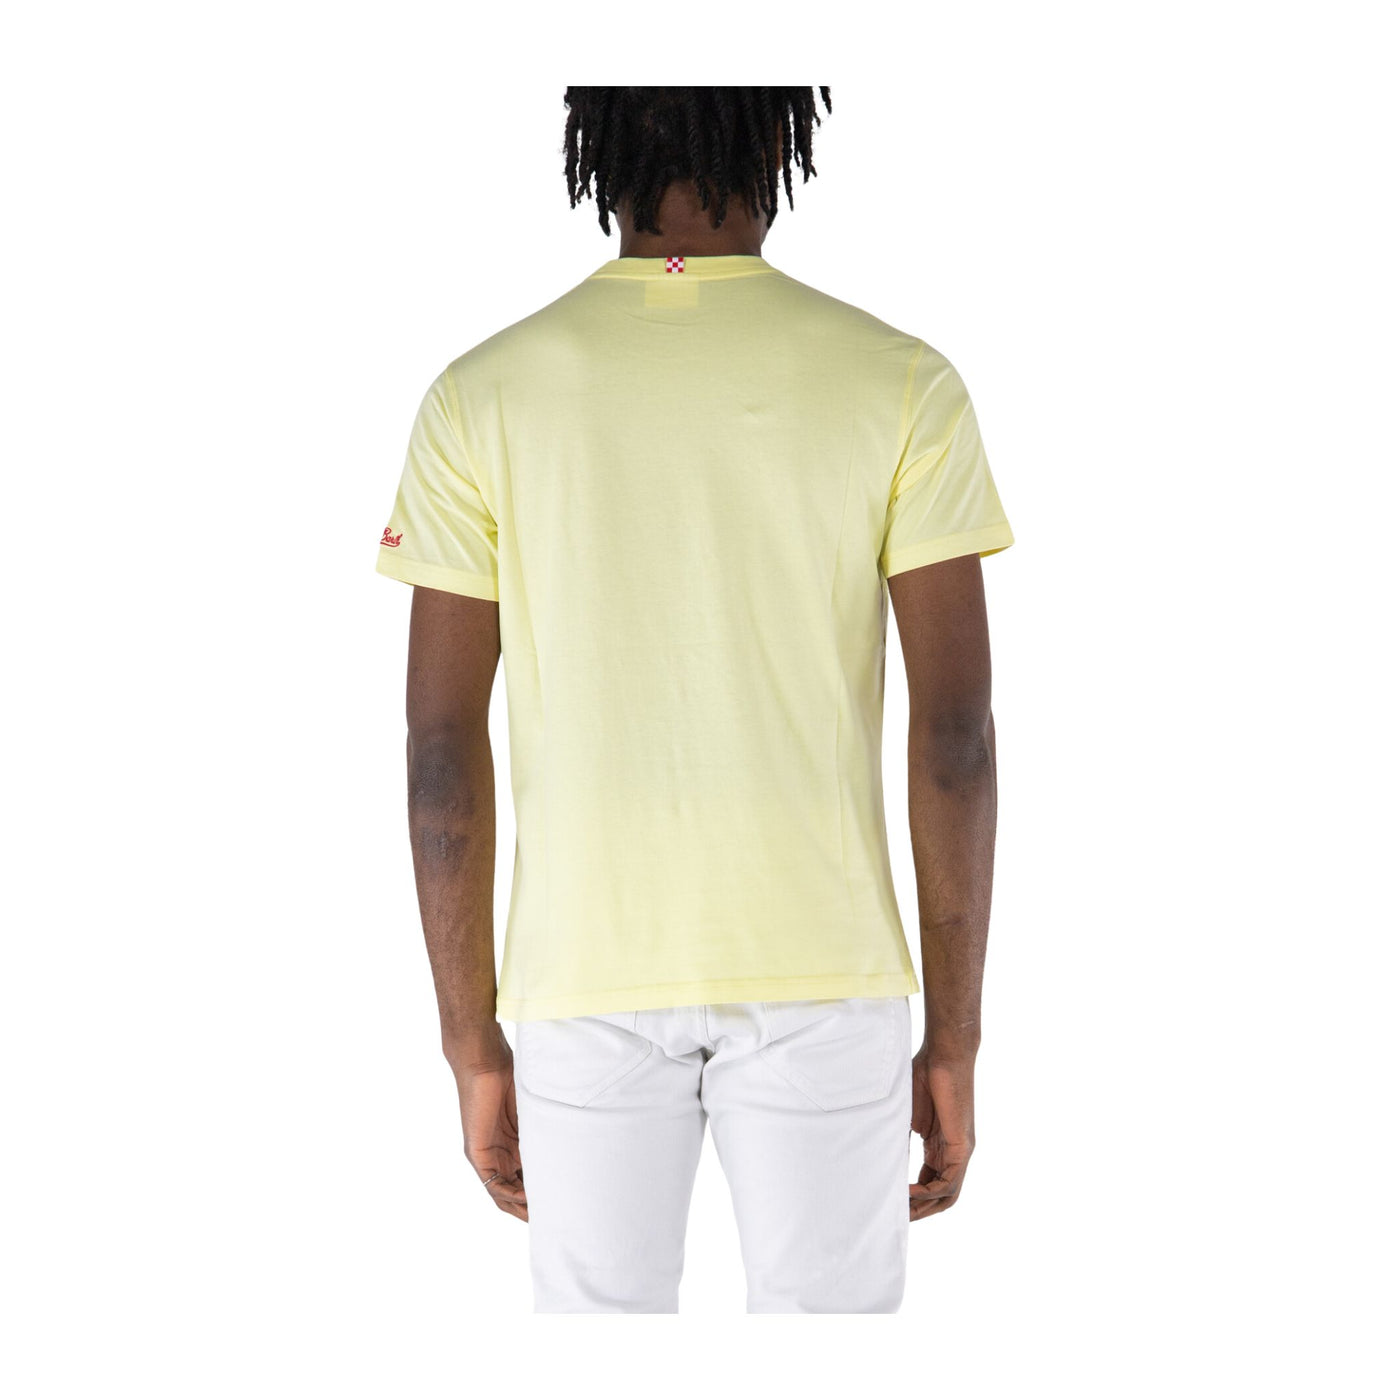 T-shirt Uomo dal design classico con mini stampa sul petto